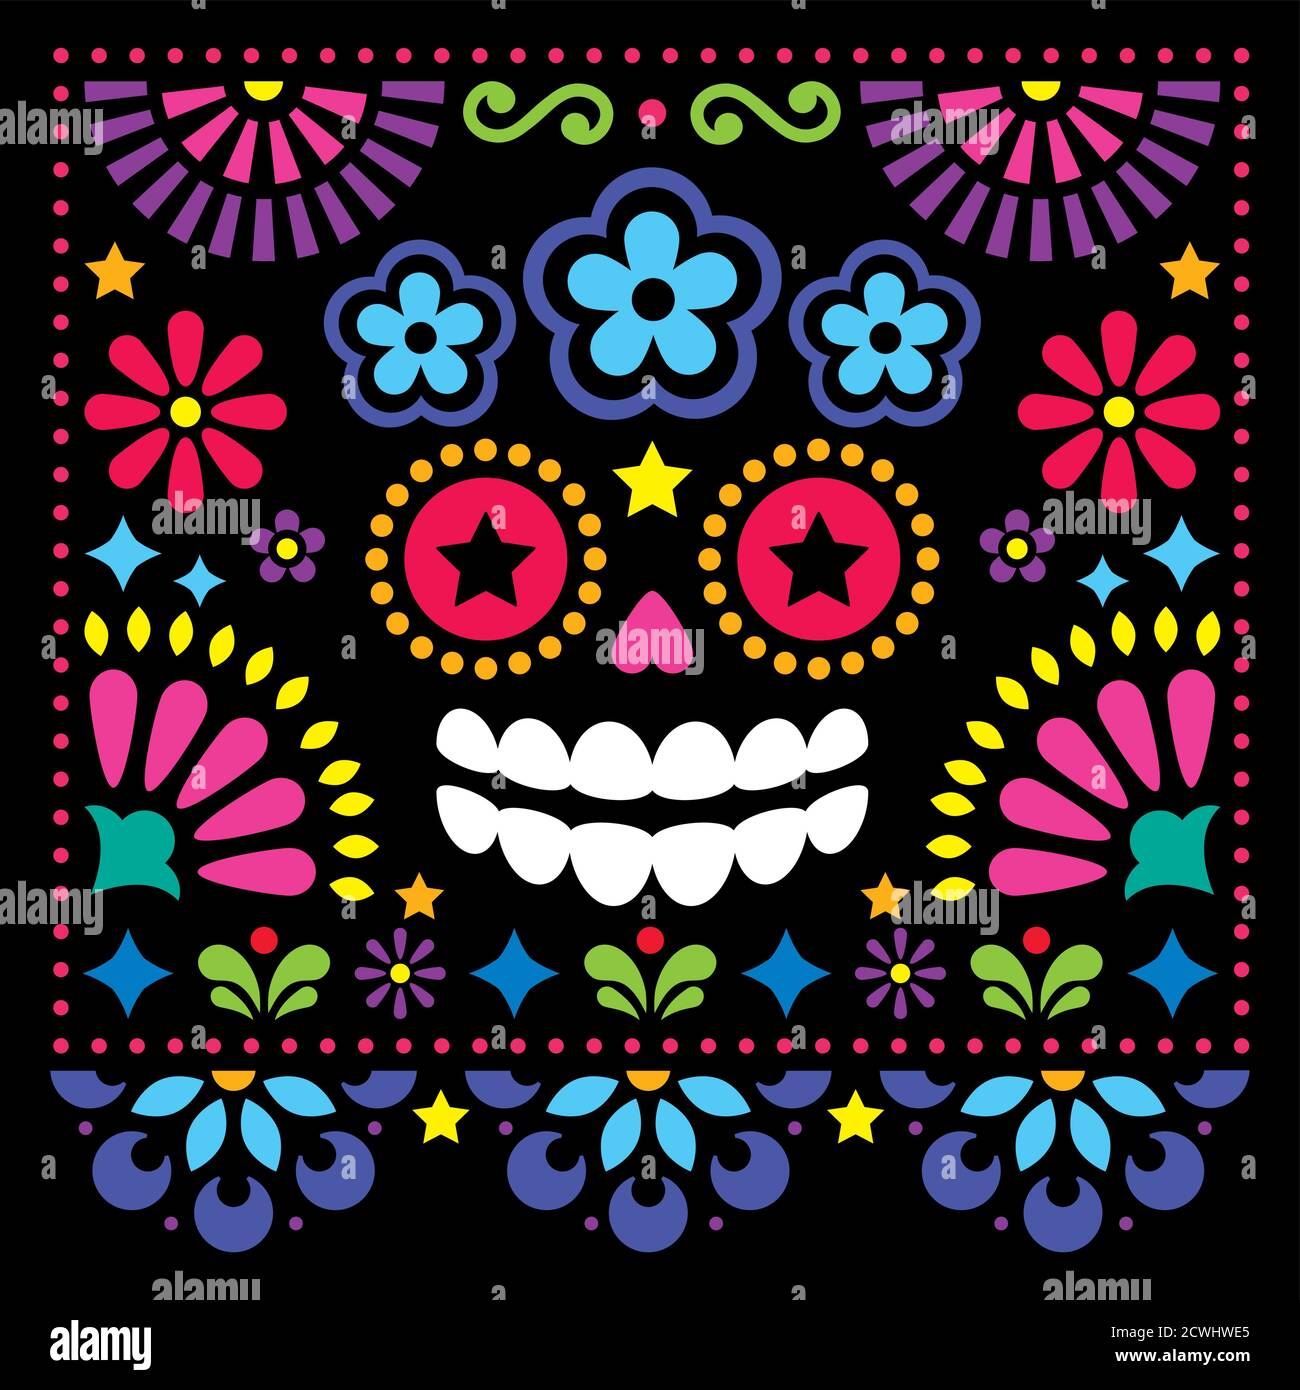 Mexikanische Volkskunst Vektor Volkskunst Design mit Zucker Totenkopf und Blumen, bunte Halloween und Tag der Toten Grußkarte auf schwarz Stock Vektor